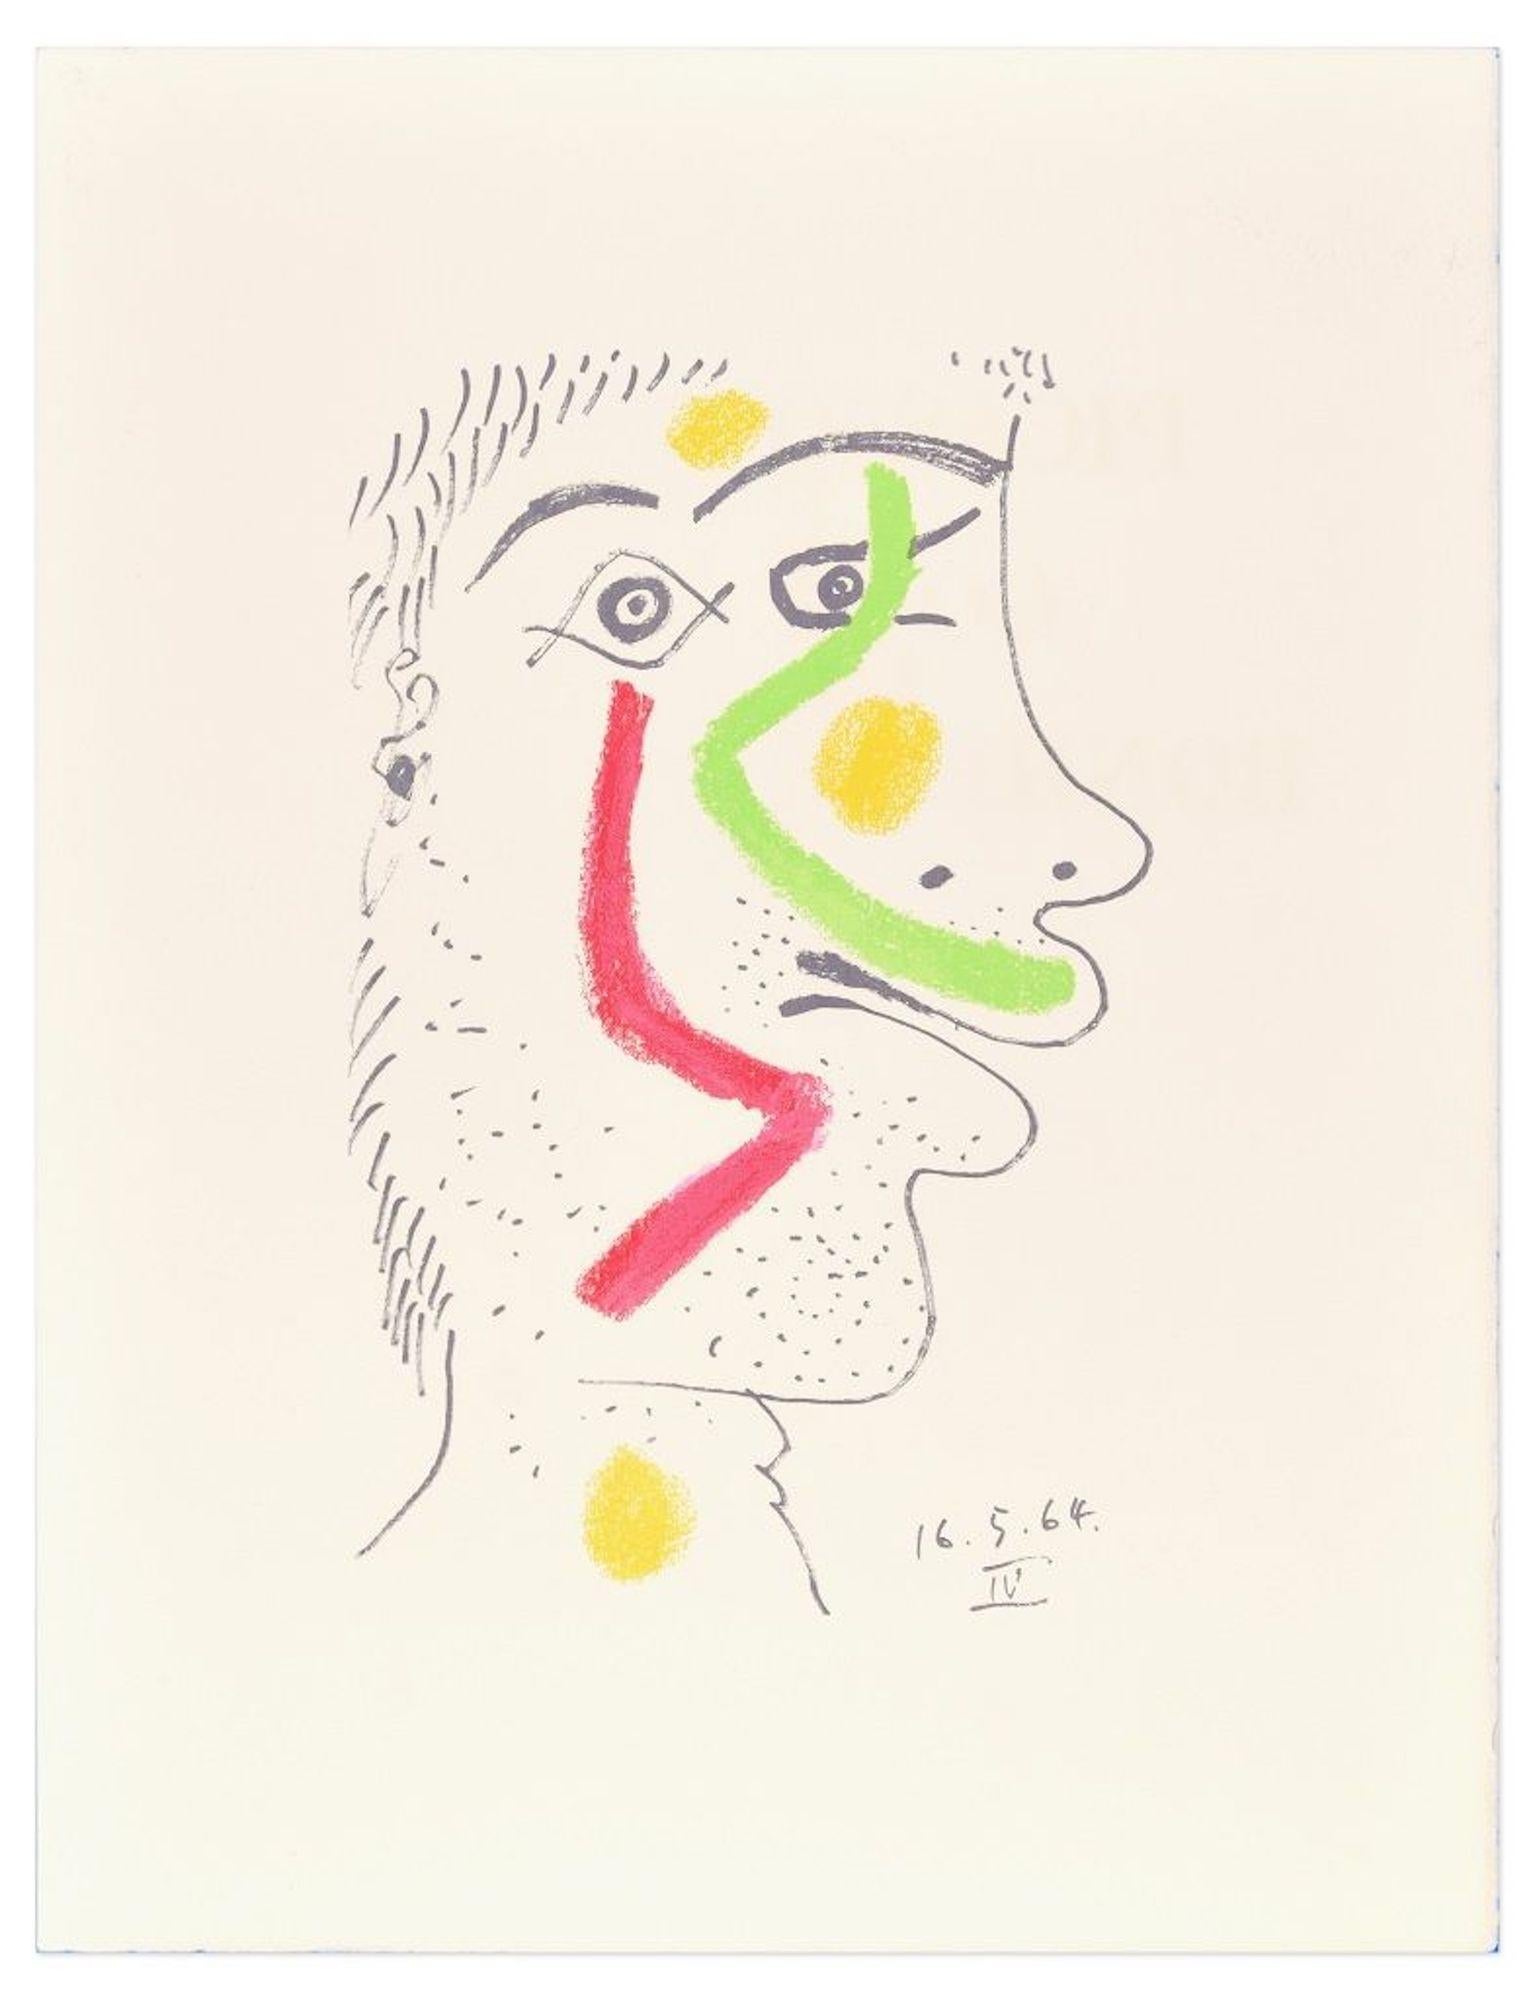 (after) Pablo Picasso Print - Le goût du Bonheur - 16.5.64 IV - Original Lithograph After P. Picasso